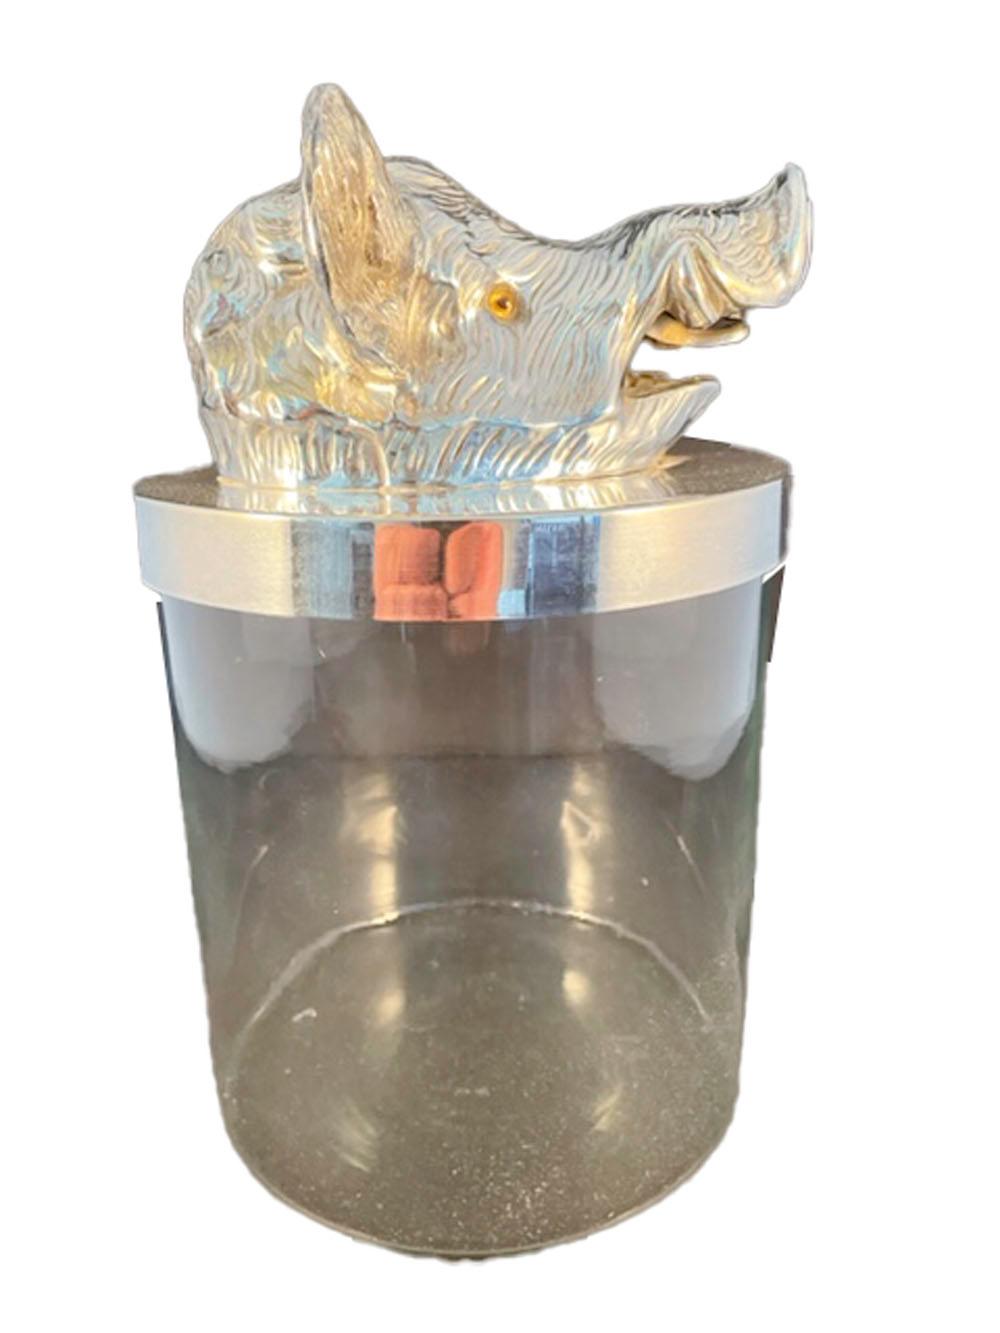 Bocal vintage en verre transparent de forme cylindrique avec un bord et un couvercle en métal argenté. Le couvercle comporte un modèle de tête de sanglier avec des yeux en verre. Attribué à Valenti, Espagne.